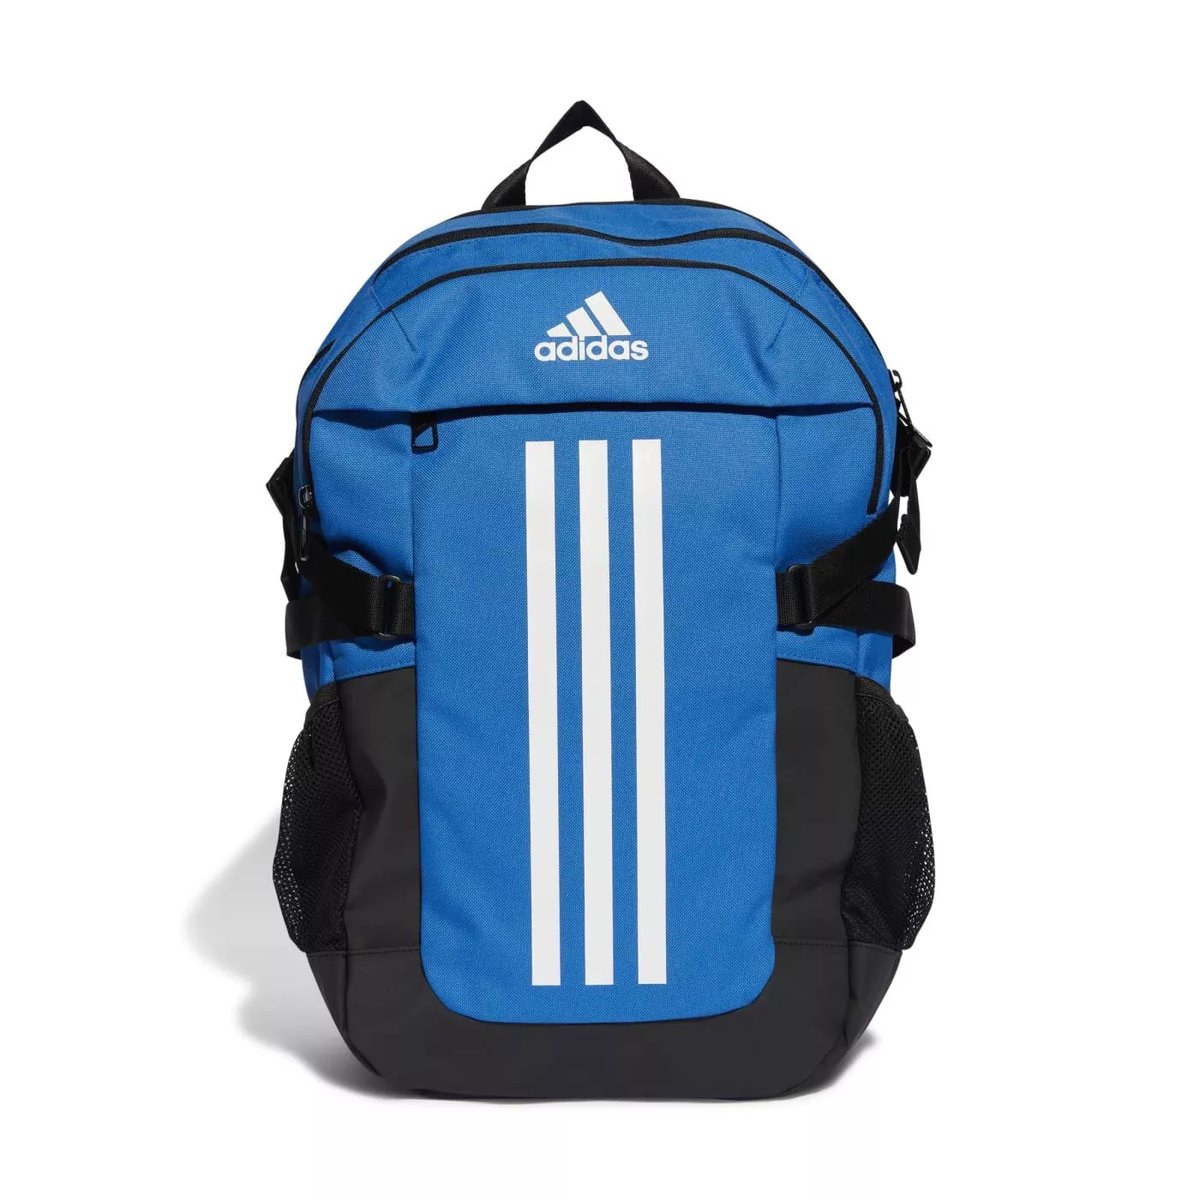 Adidas, Plecak sportowy Power VI Backpack, IL5815, Niebiesko-czarny